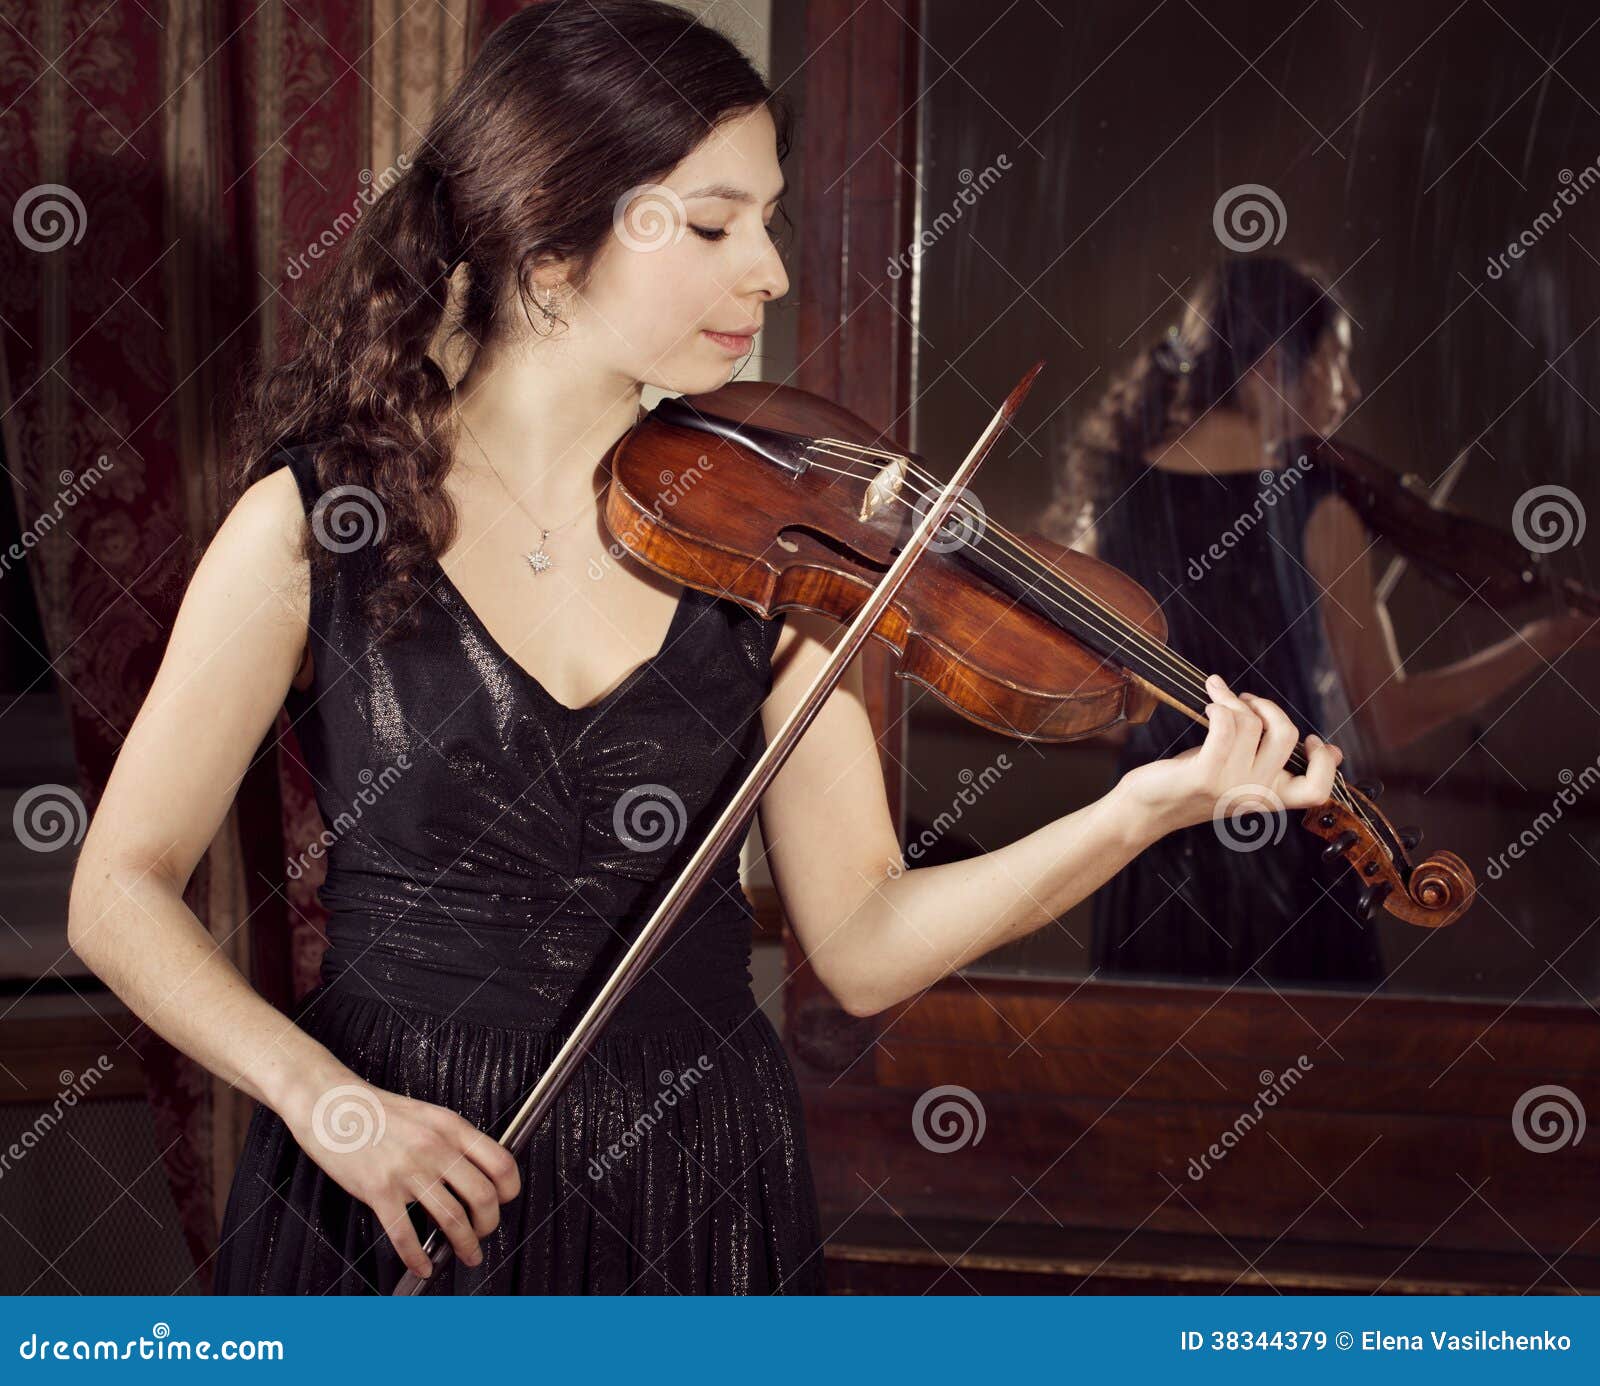 uhøjtidelig sorg Skaldet Portrait of a Girl Playing Violin Stock Image - Image of instrument,  musician: 38344379